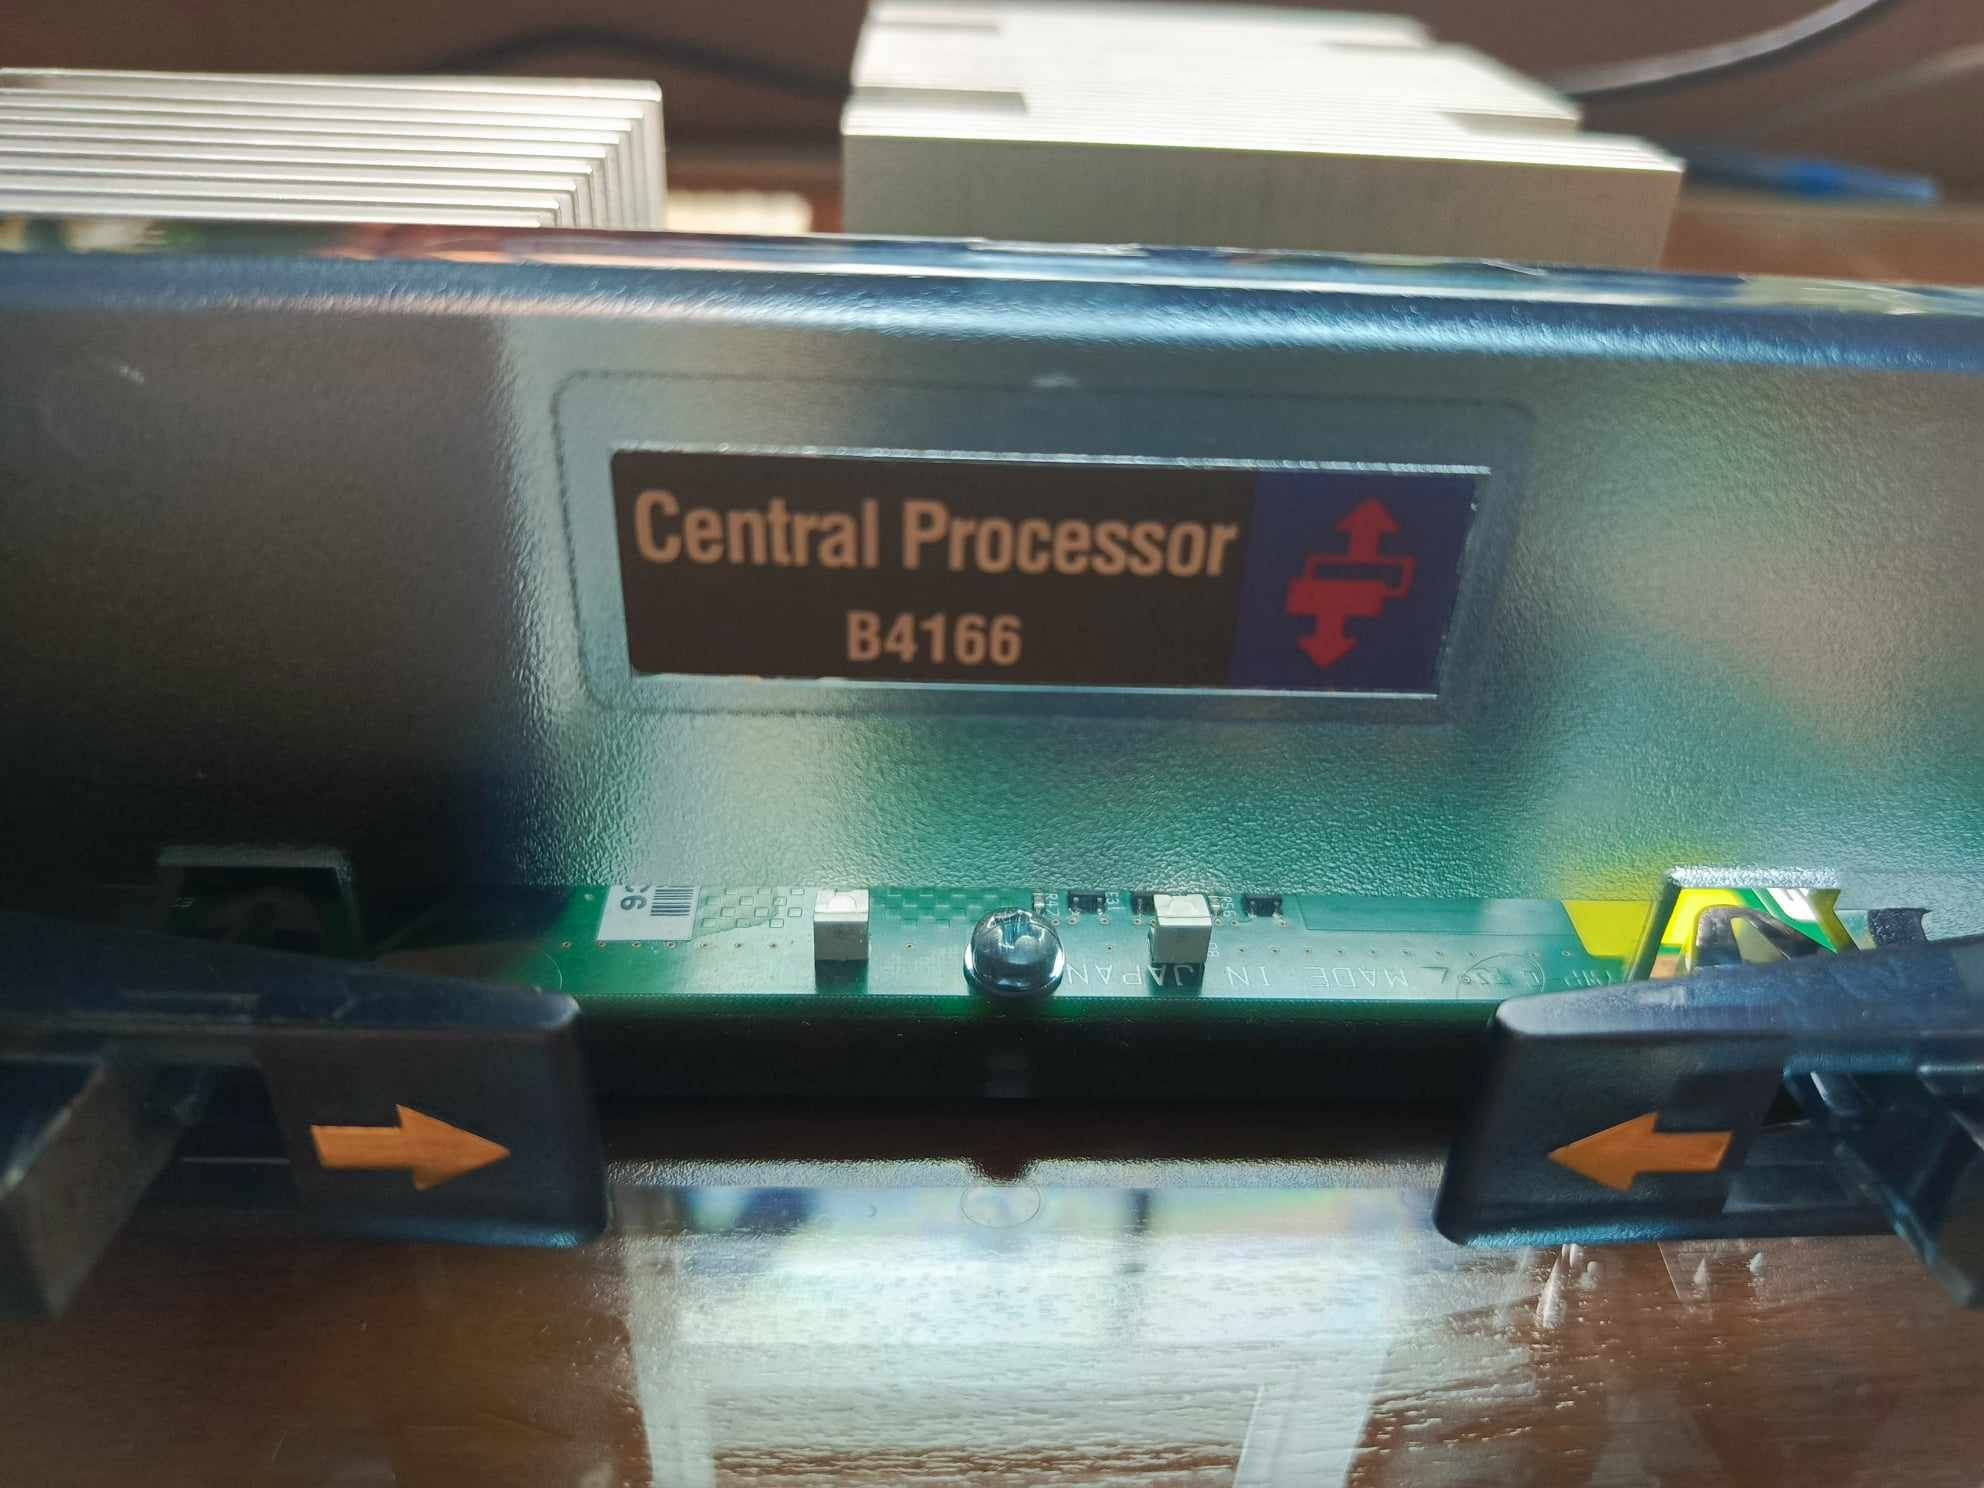 Procesor z serwera Central Processor B4166